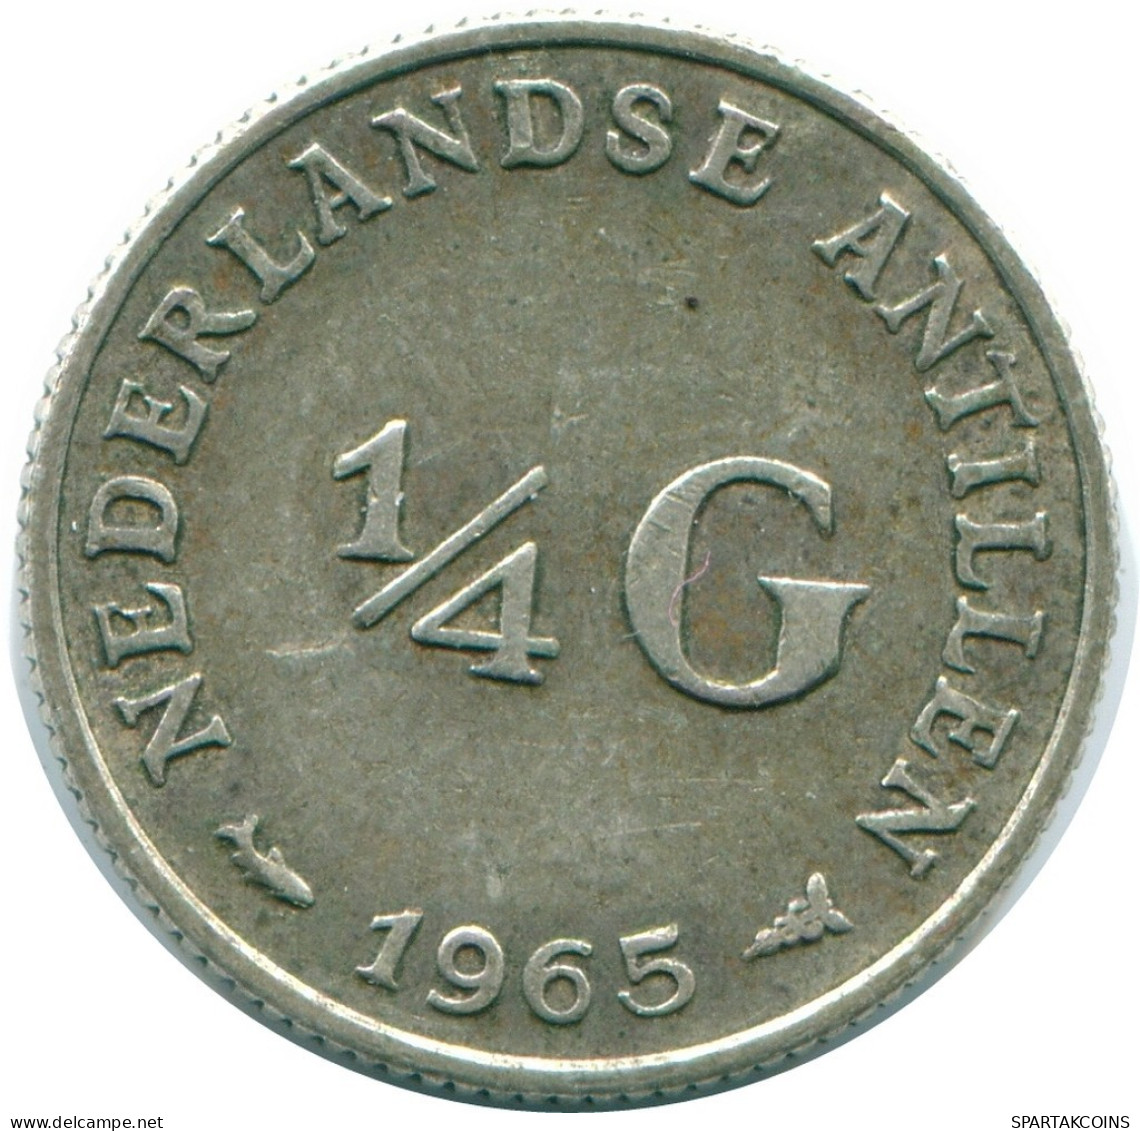 1/4 GULDEN 1965 NIEDERLÄNDISCHE ANTILLEN SILBER Koloniale Münze #NL11382.4.D.A - Antilles Néerlandaises